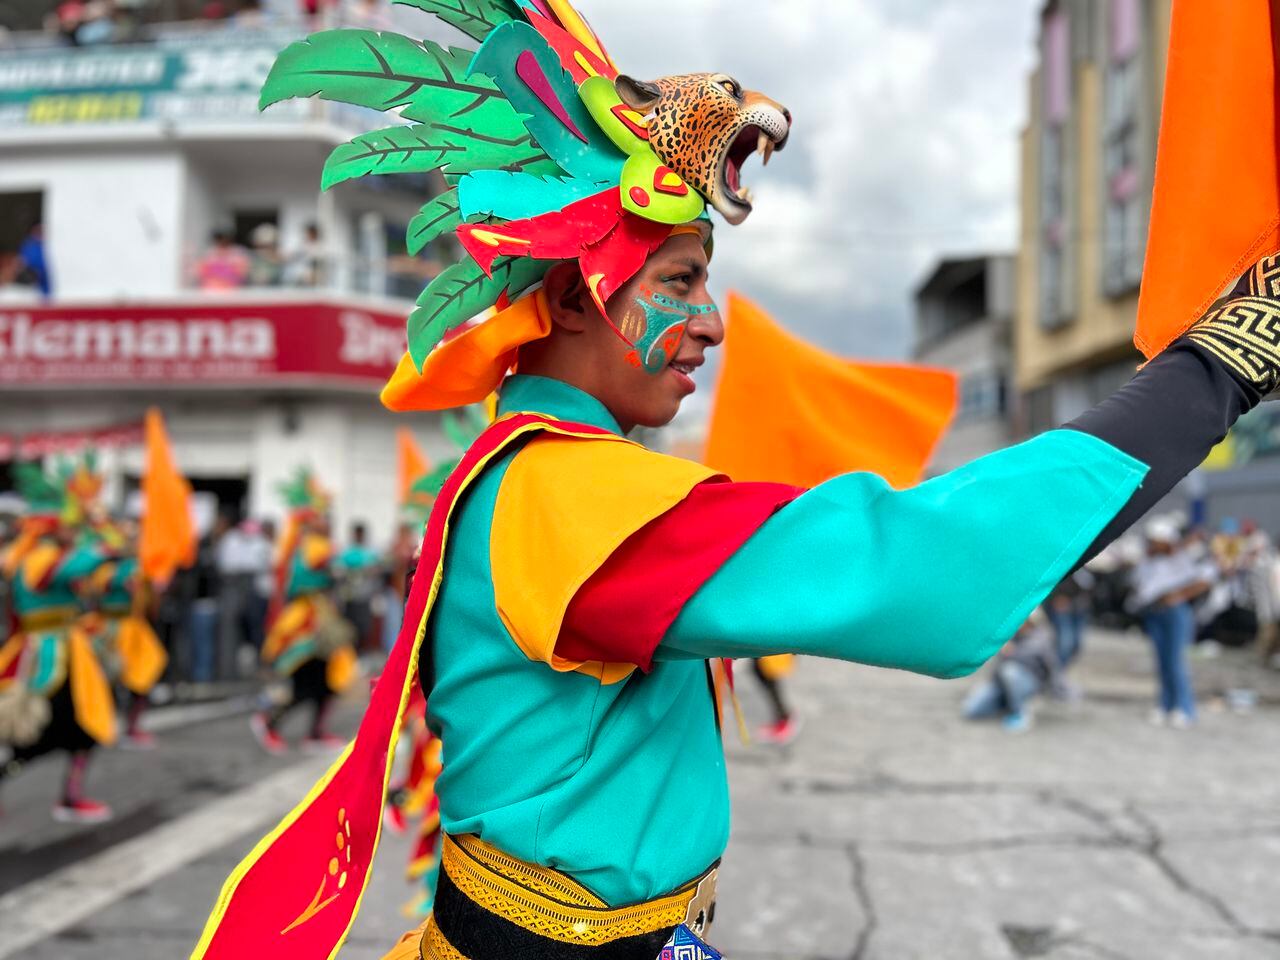 El Canto a la Tierra marca el segundo día del Carnaval de Negros y Blancos en Nariño, con un gran desfile de colectivos coreográficos que evocan la travesía de las tribus hacia la Madre Tierra. Héctor Montero